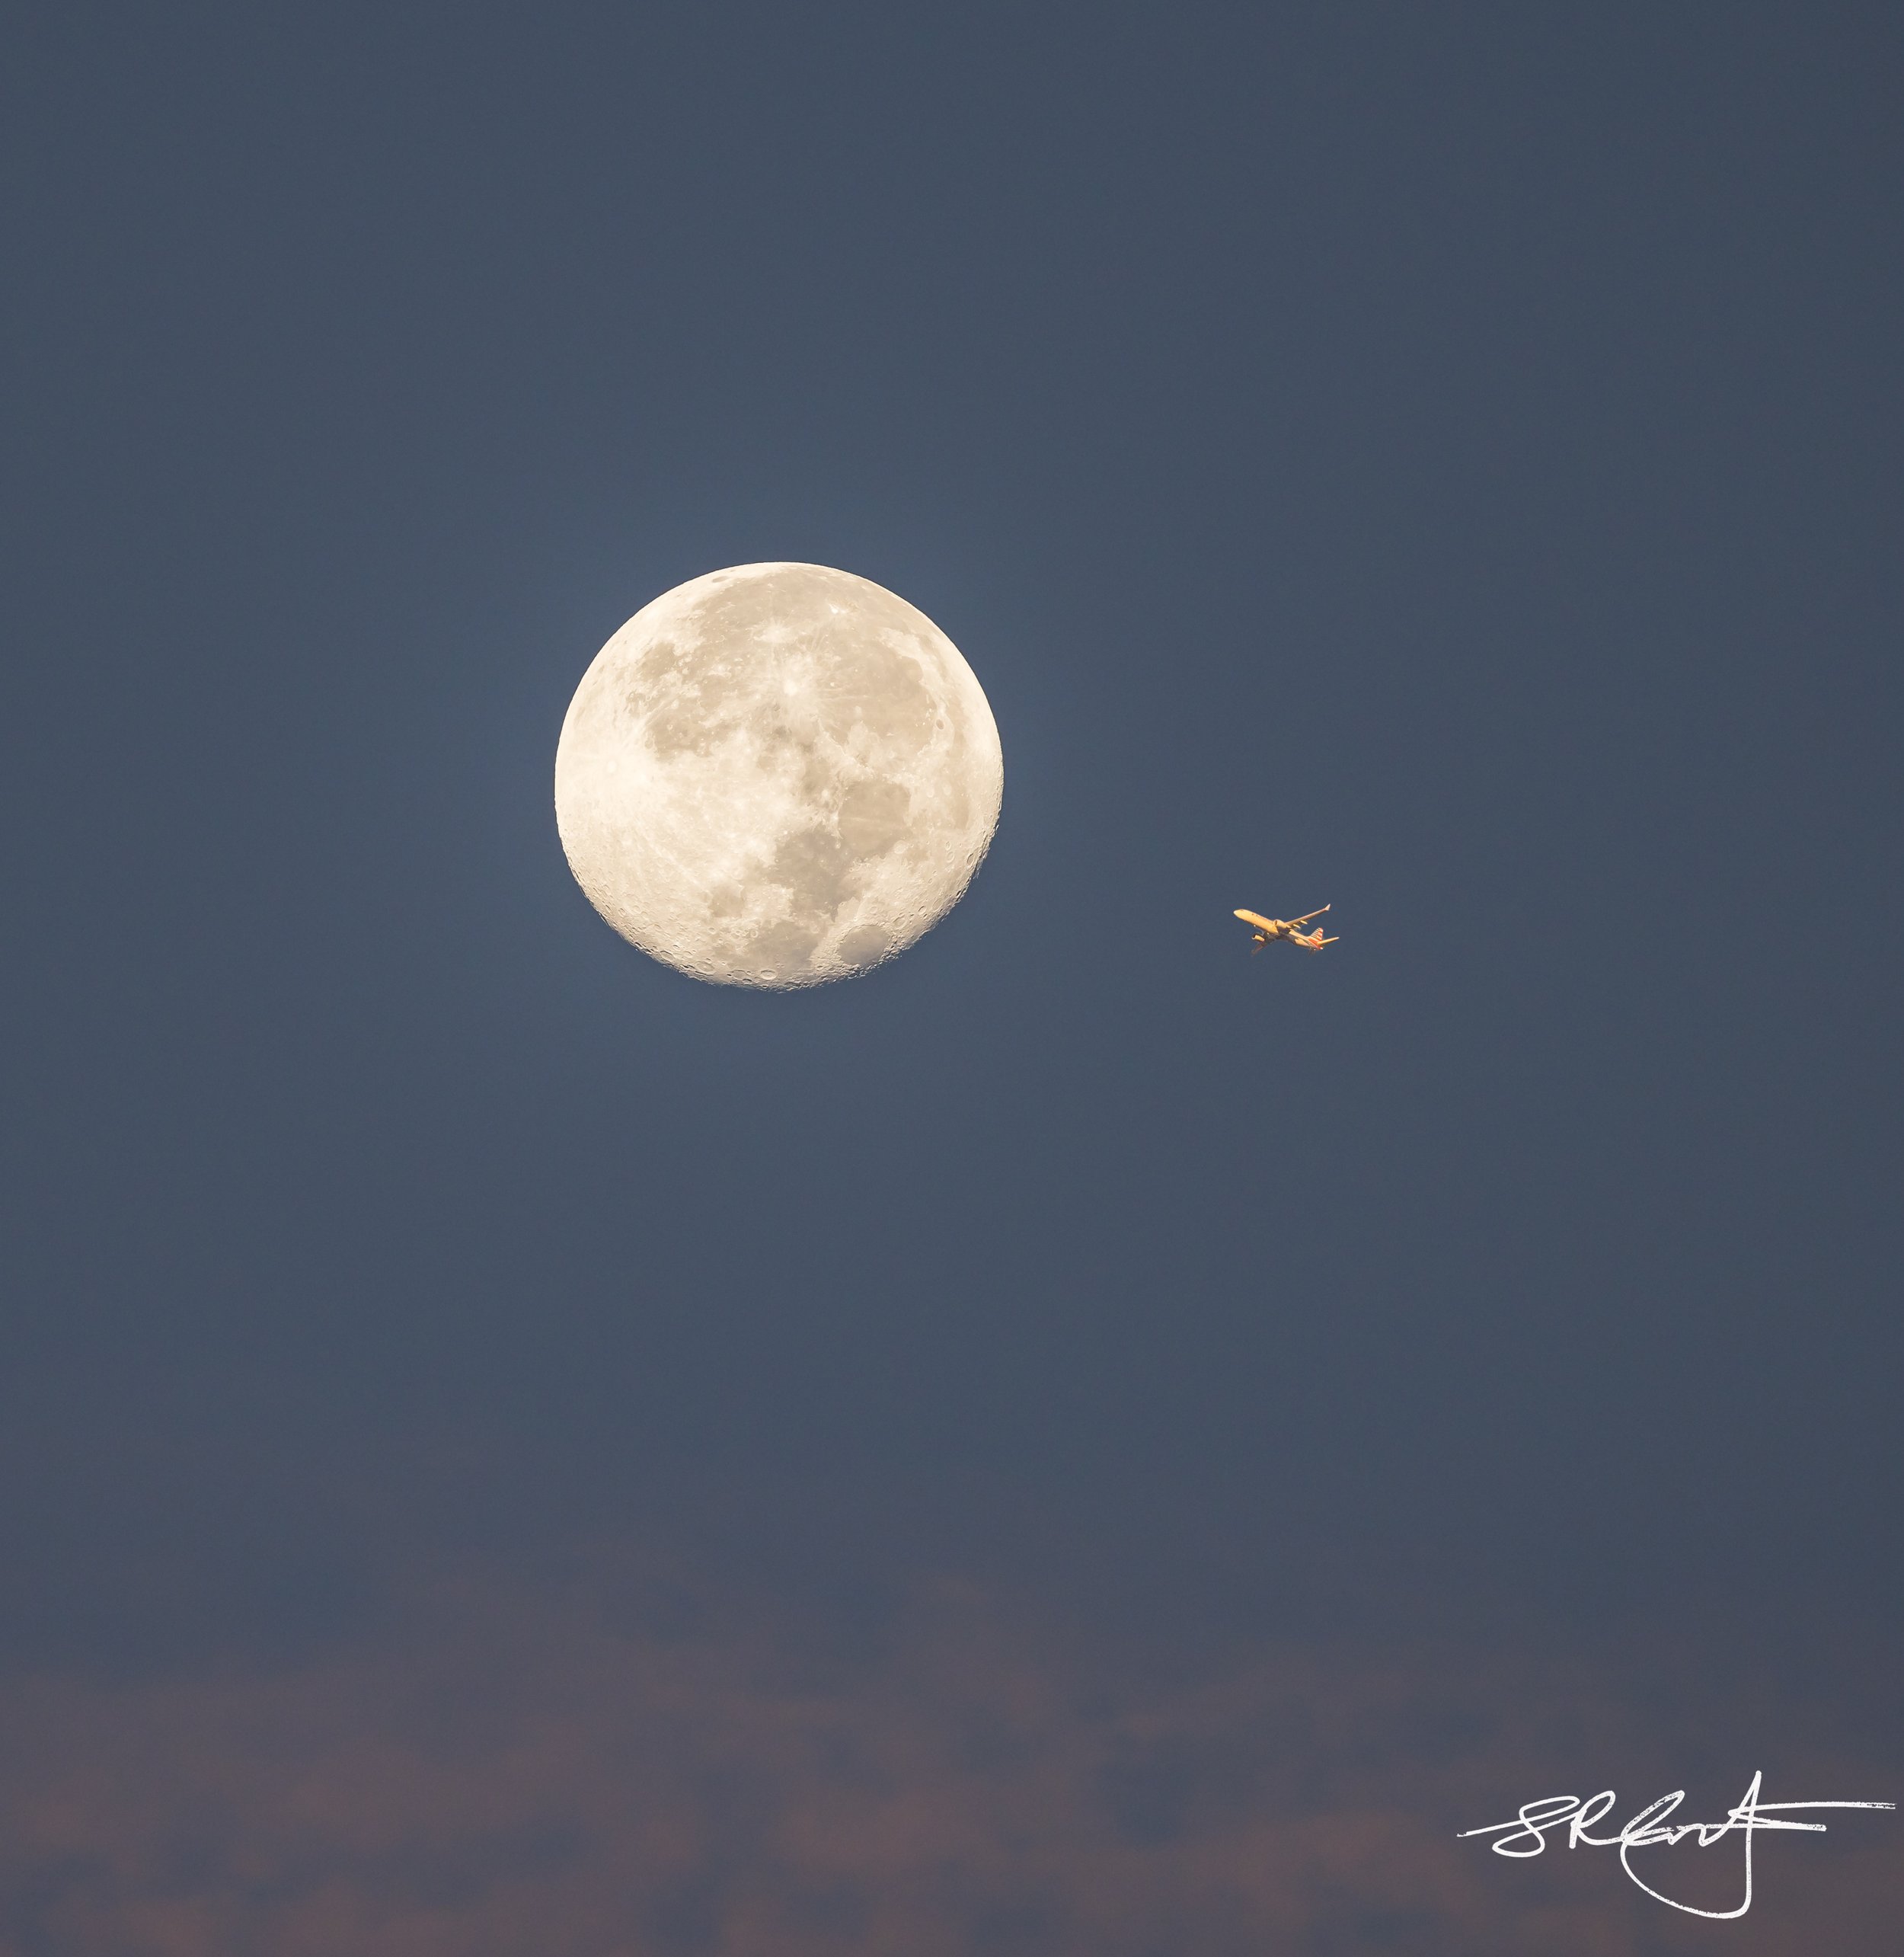 Jet flying past the full moon.